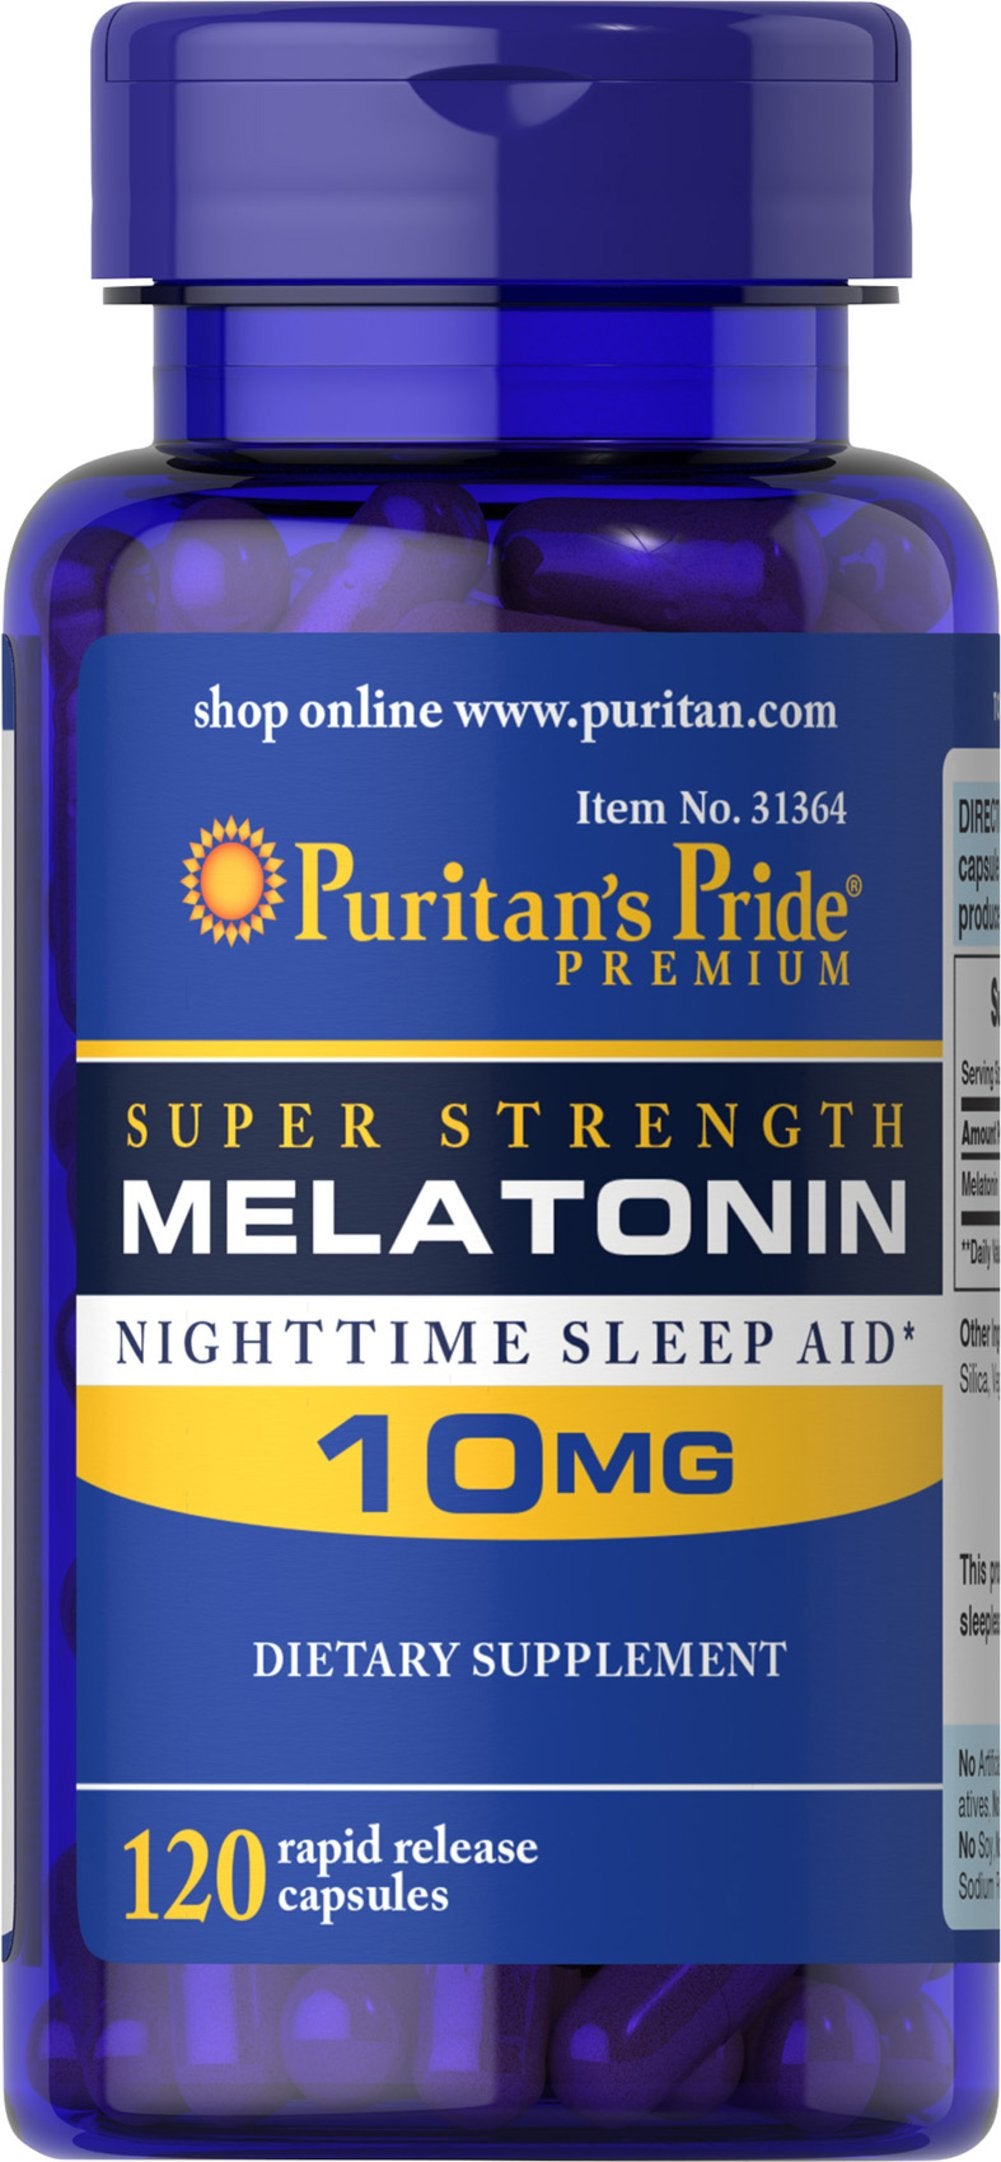 Puritan's Pride Super Strength Melatonin 10mg